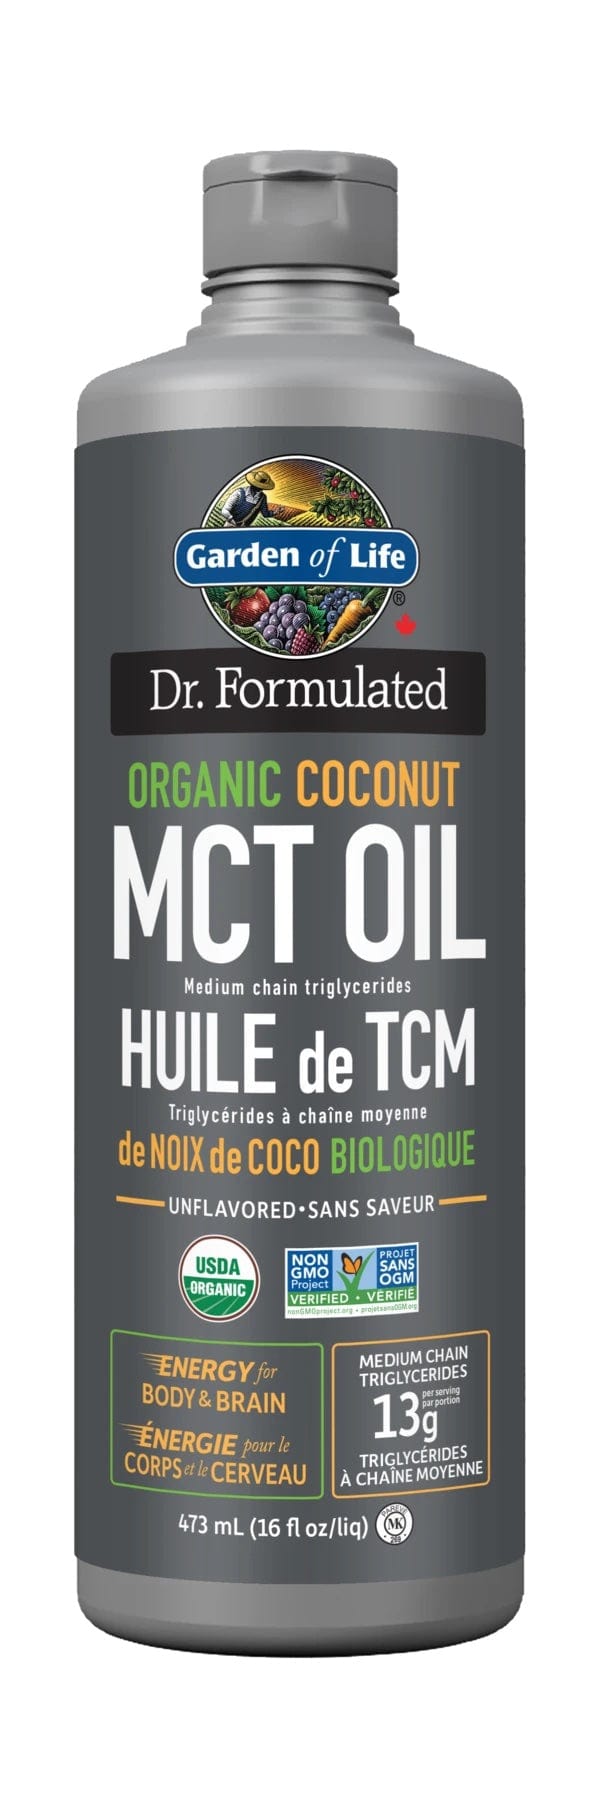 GARDEN OF LIFE Suppléments Huile de TCM 100% noix de coco Bio (sans saveur ) 473ml